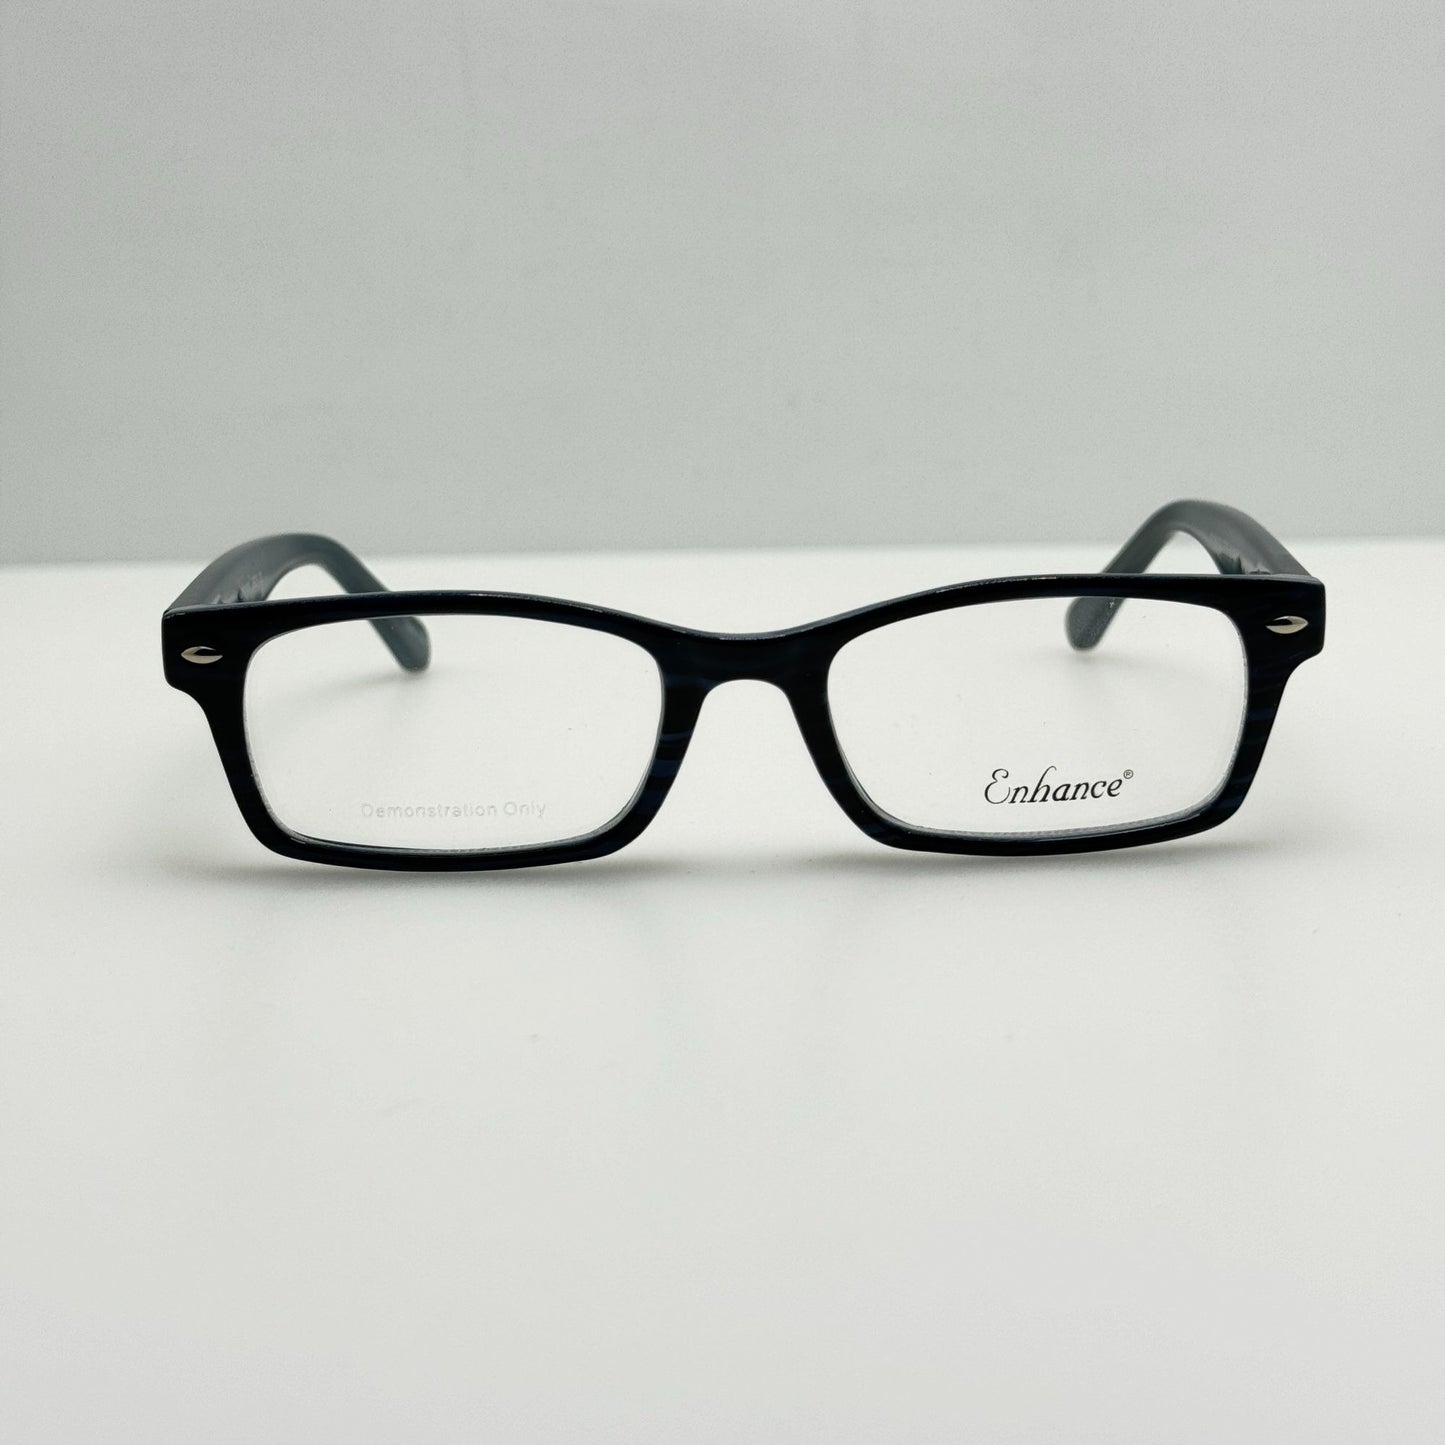 Enhance Eyeglasses Eye Glasses Frames EN 3928 Blue 45-16-130